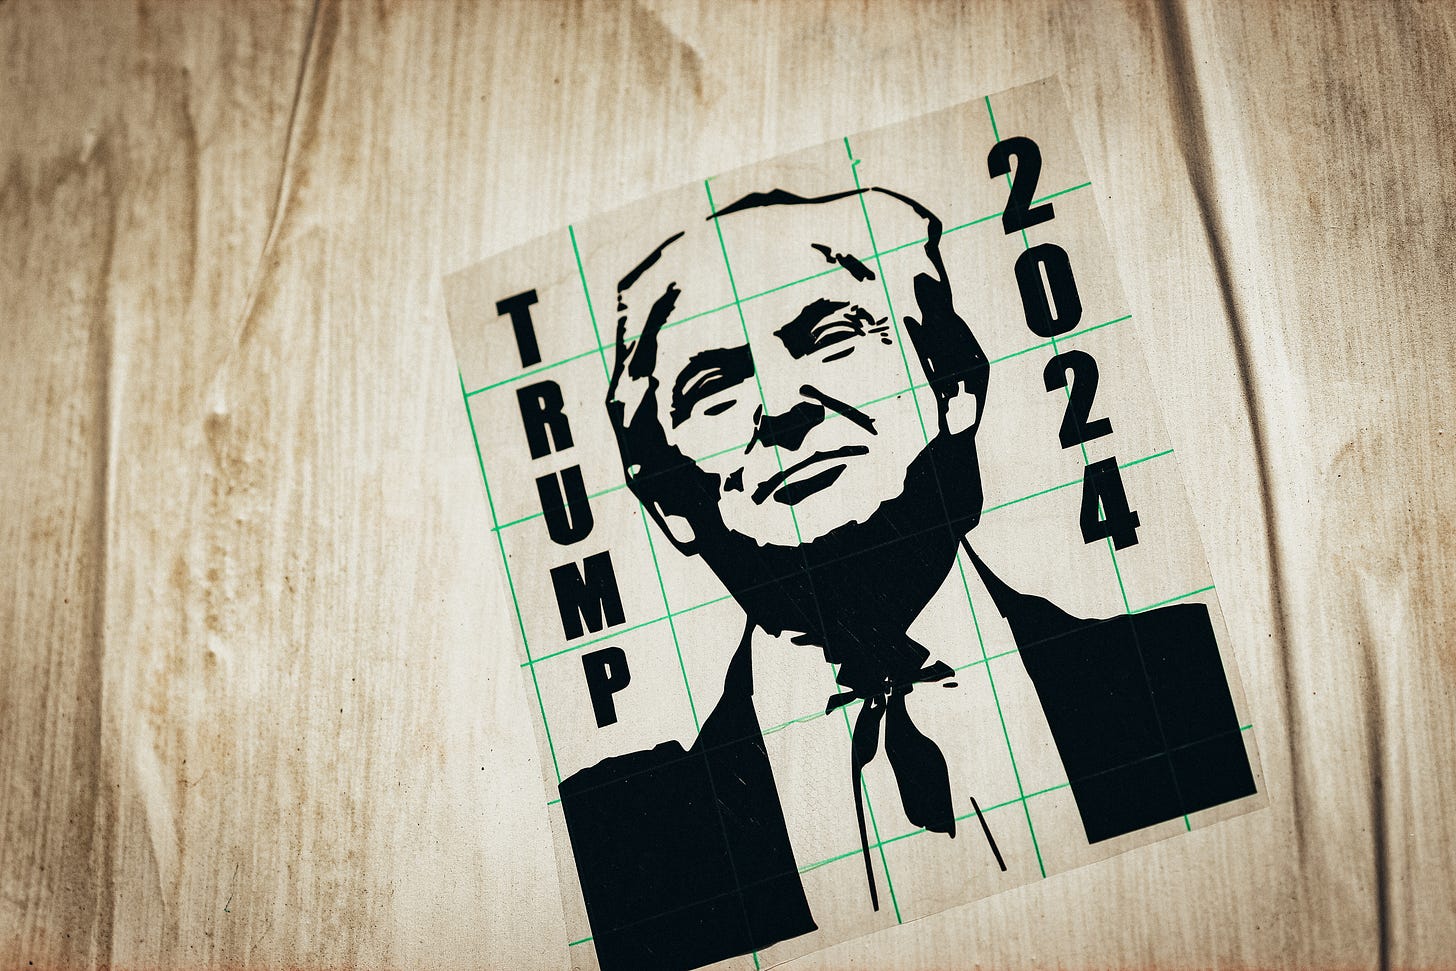 Trump 2024 sign